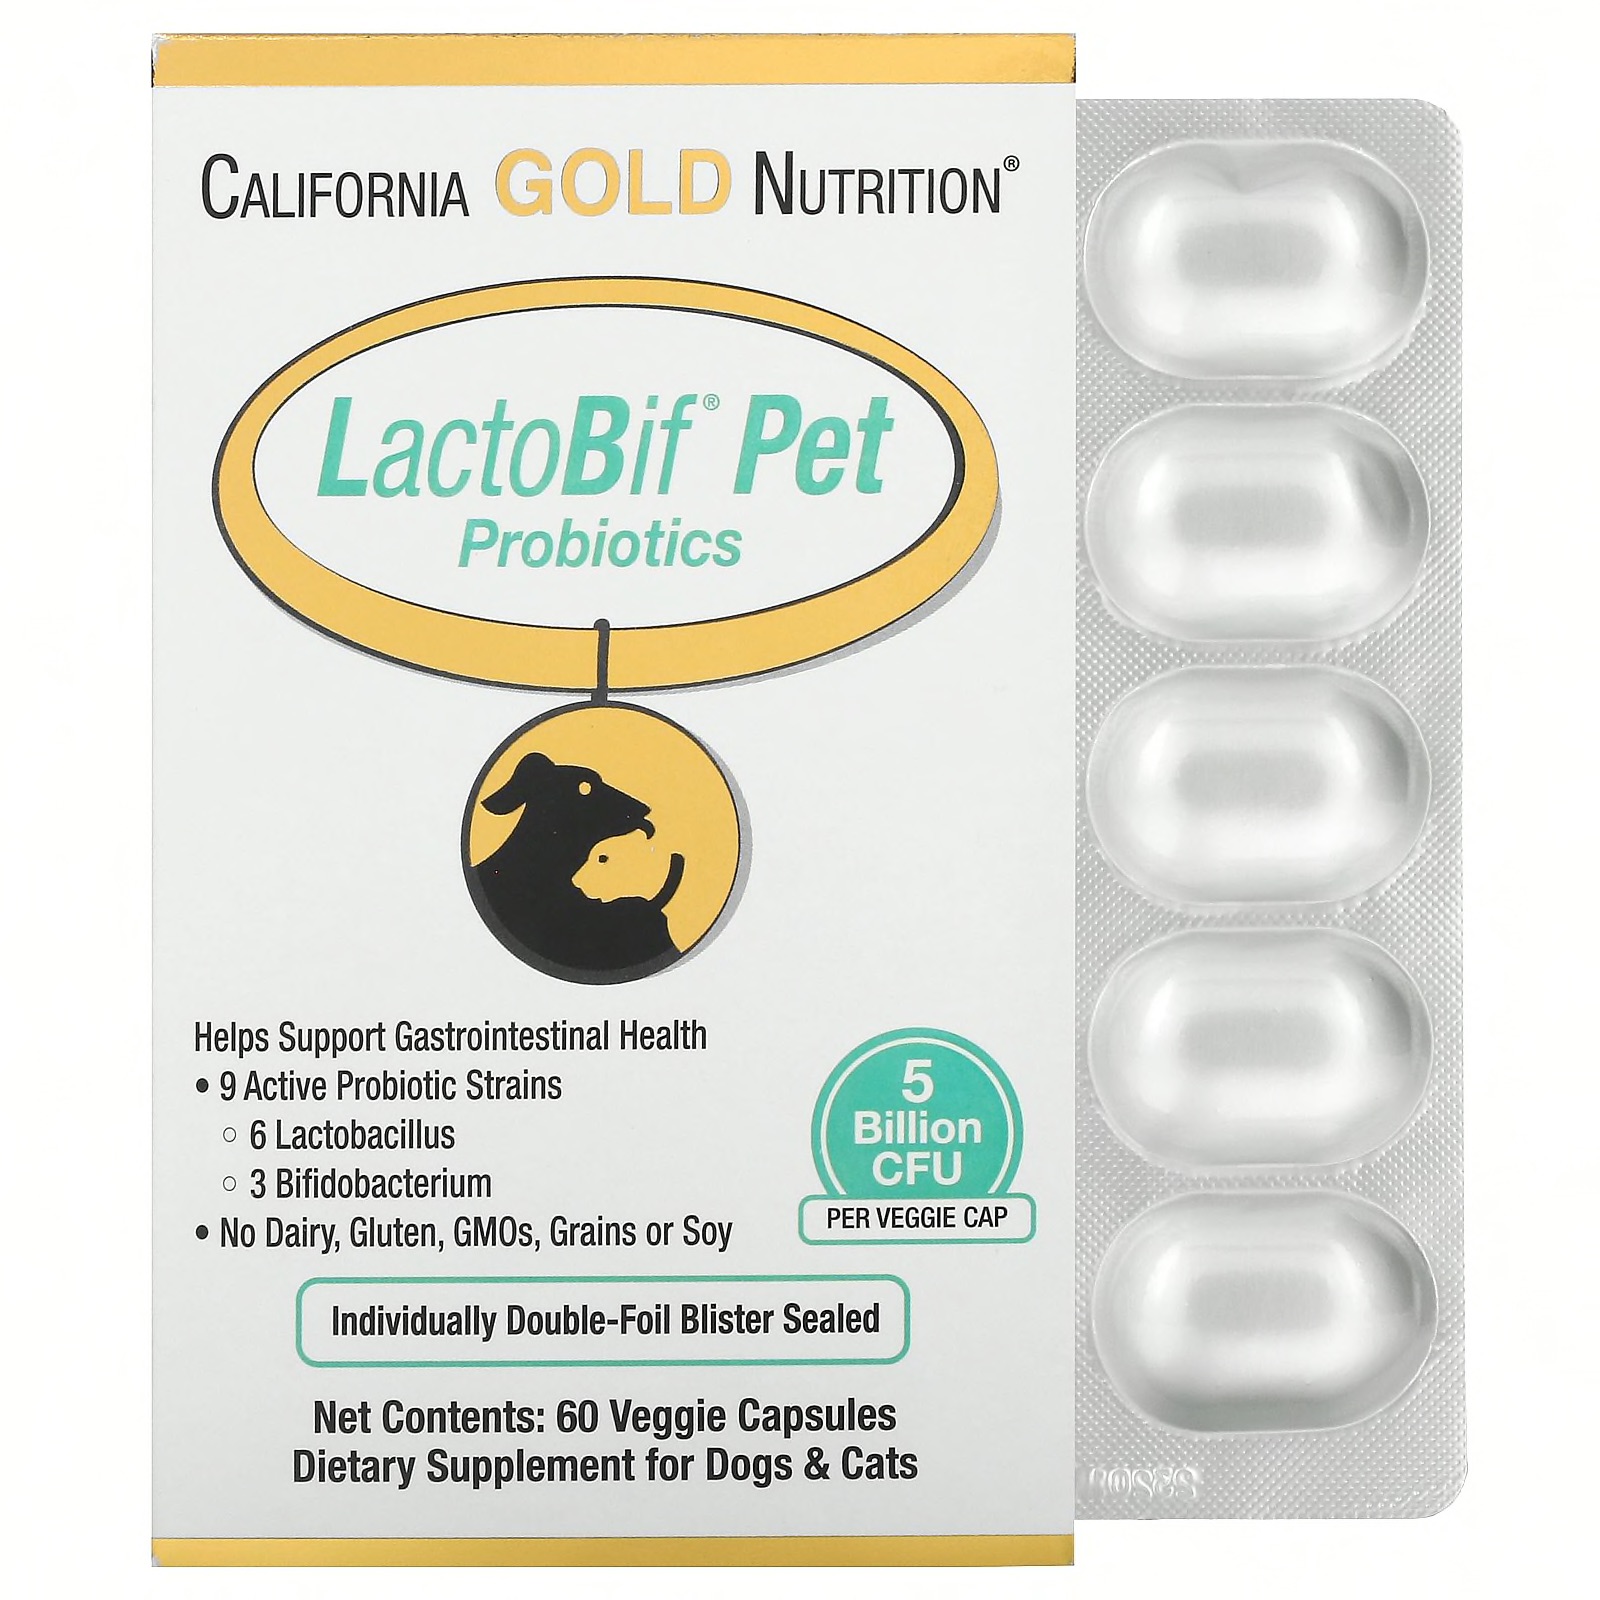 Капсулы California Gold Nutrition LactoBif Pet Probiotics, 5 Billion CFU, 60 шт.